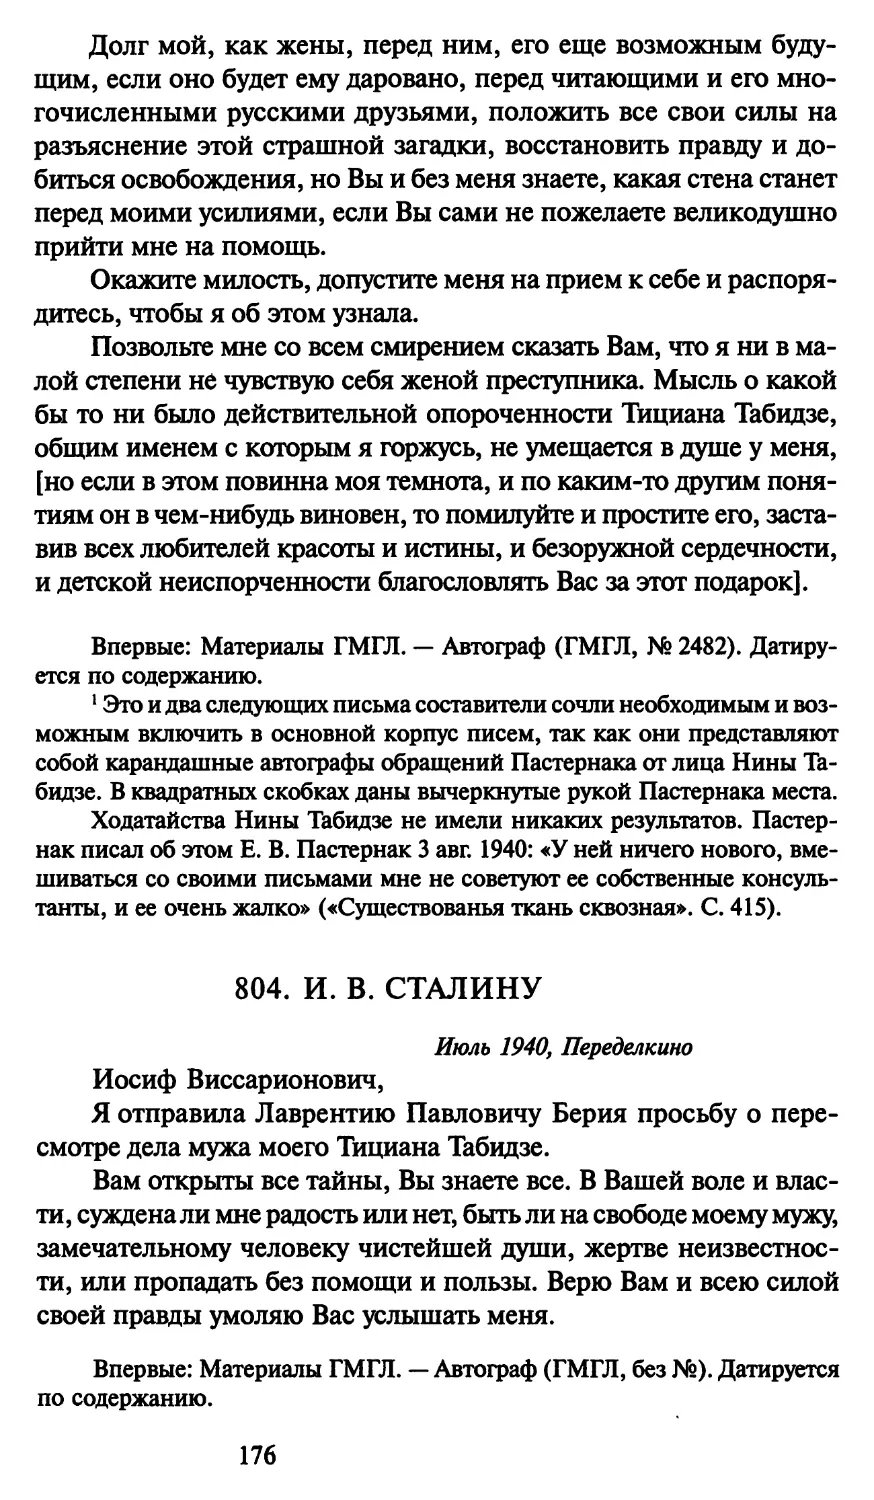 804. И. В. Сталину июль 1940